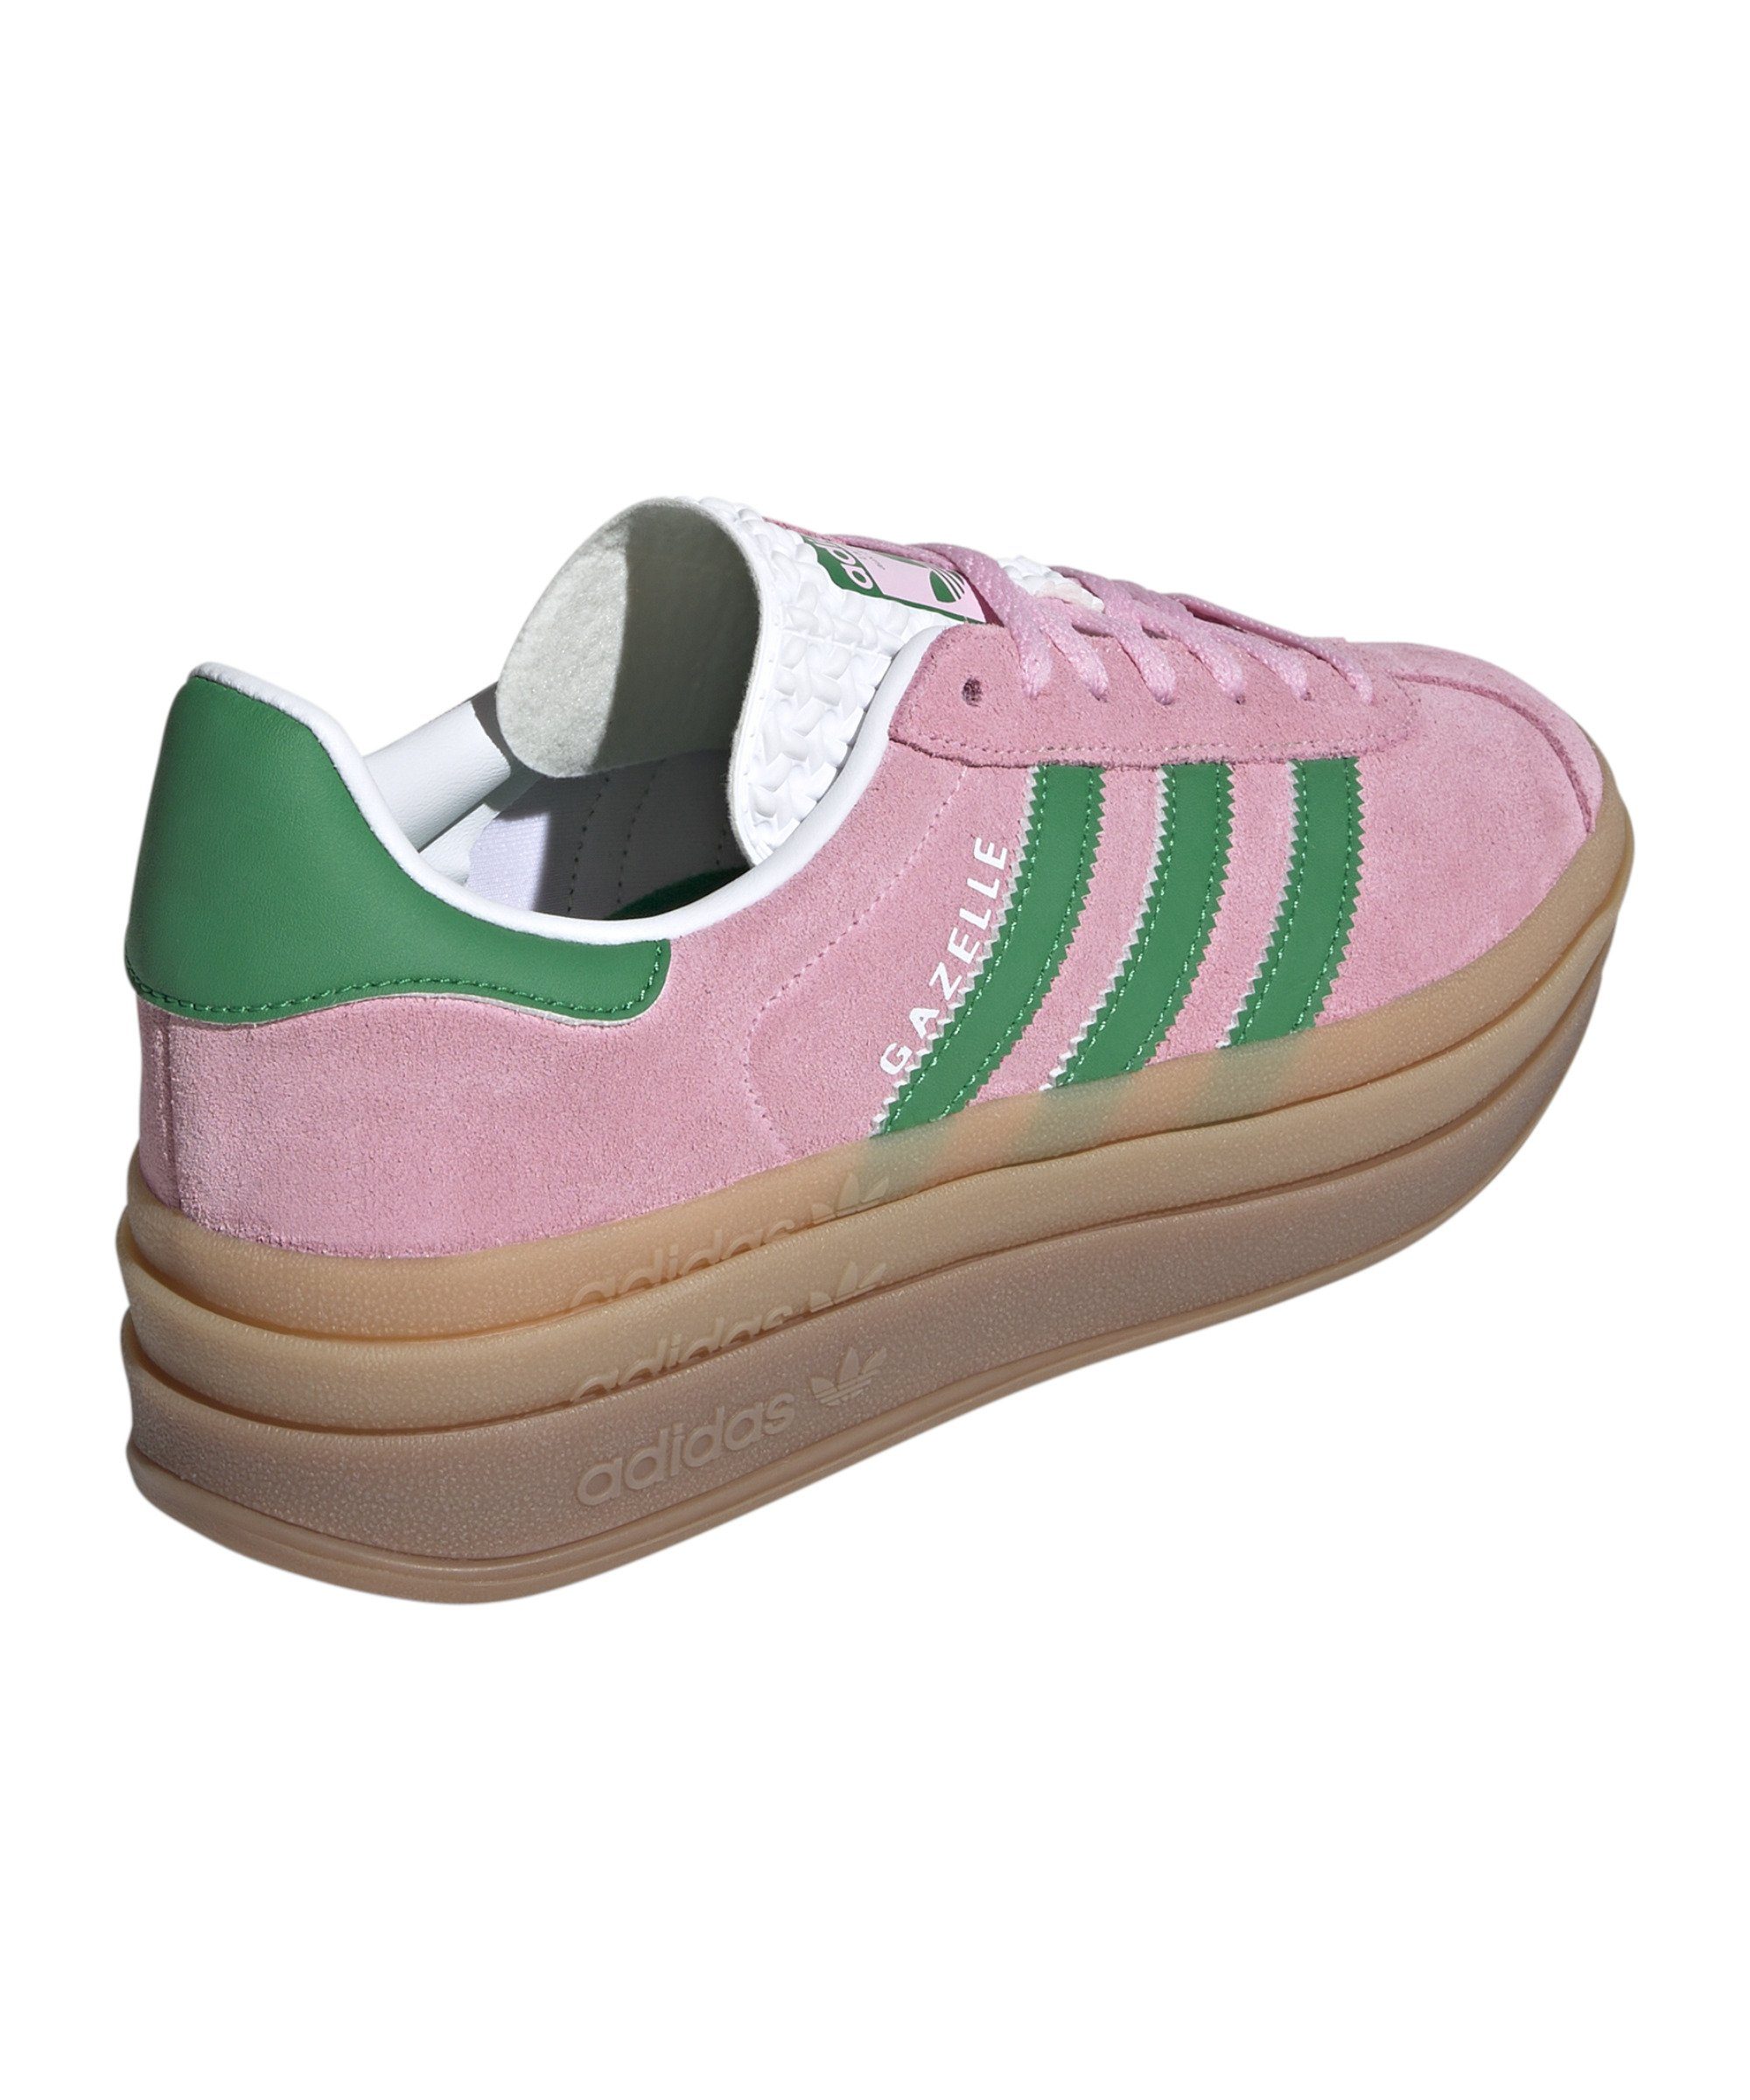 Bold adidas Originals Gazelle Damen pinkgruenweiss Sneaker